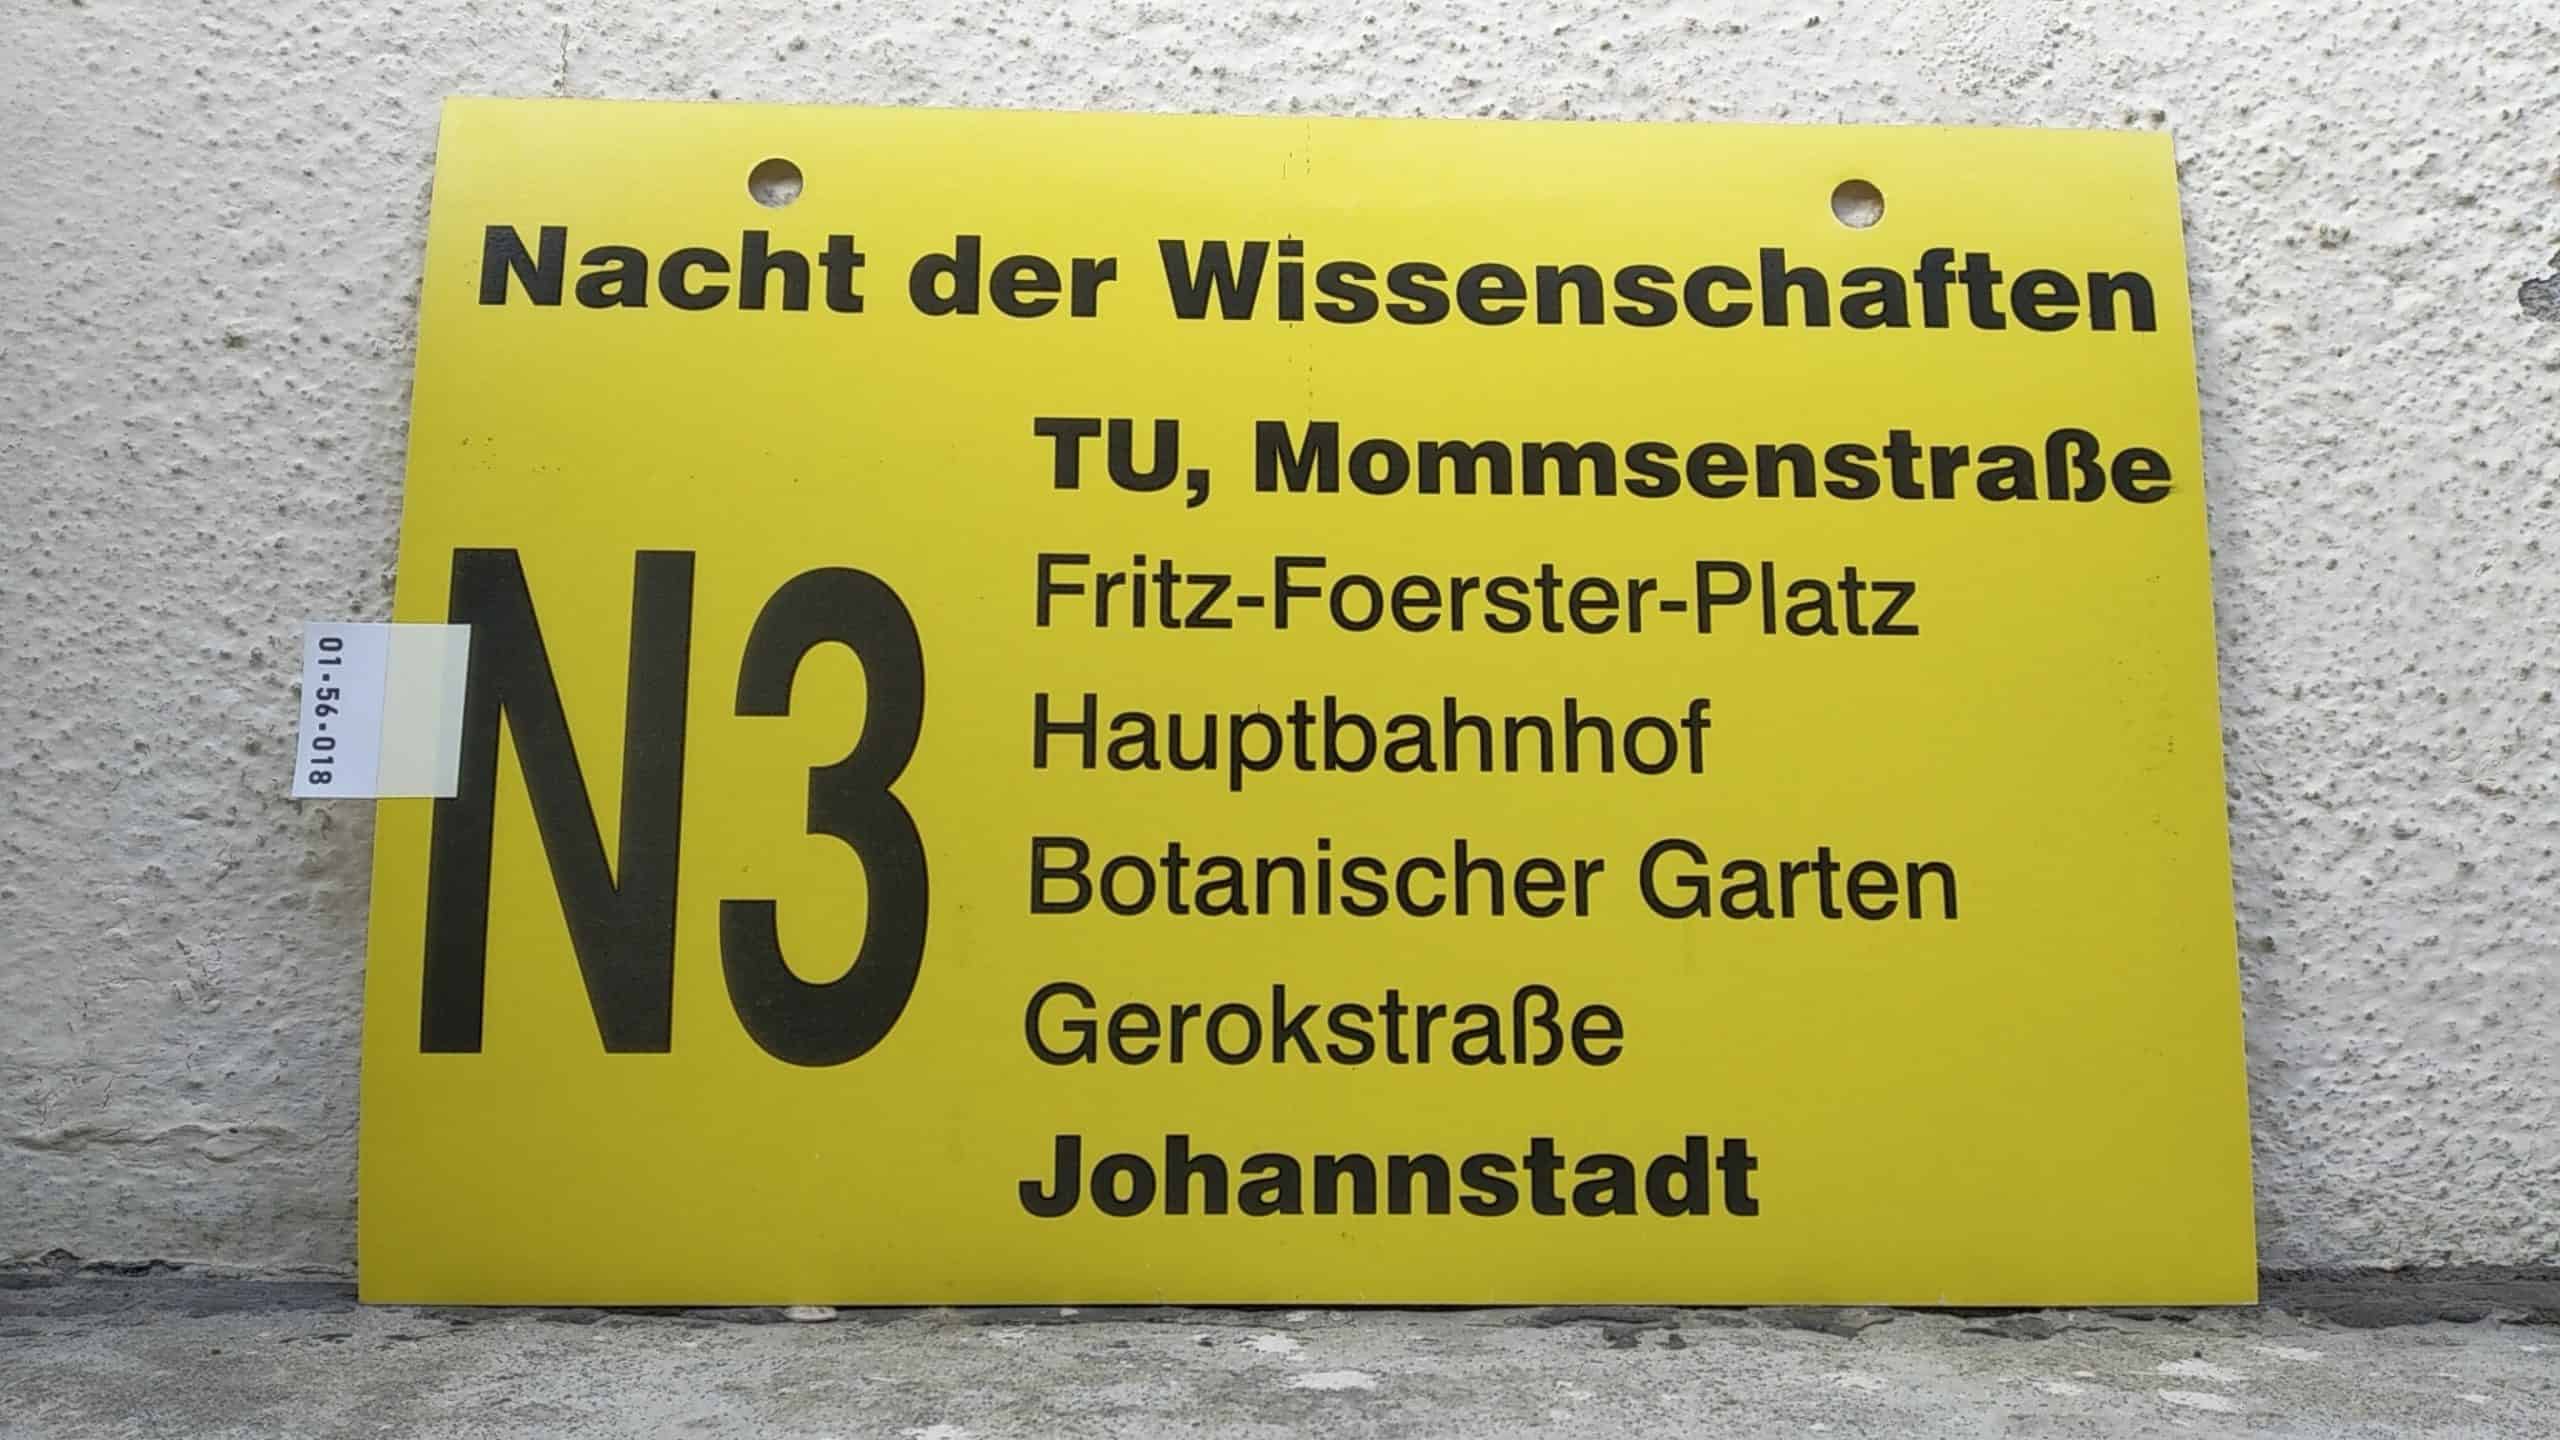 Ein seltenes Bus-Linienschild aus Dresden, anläßlich Nacht der Wissenschaften N3  TU, Mommsenstraße - Johannstadt